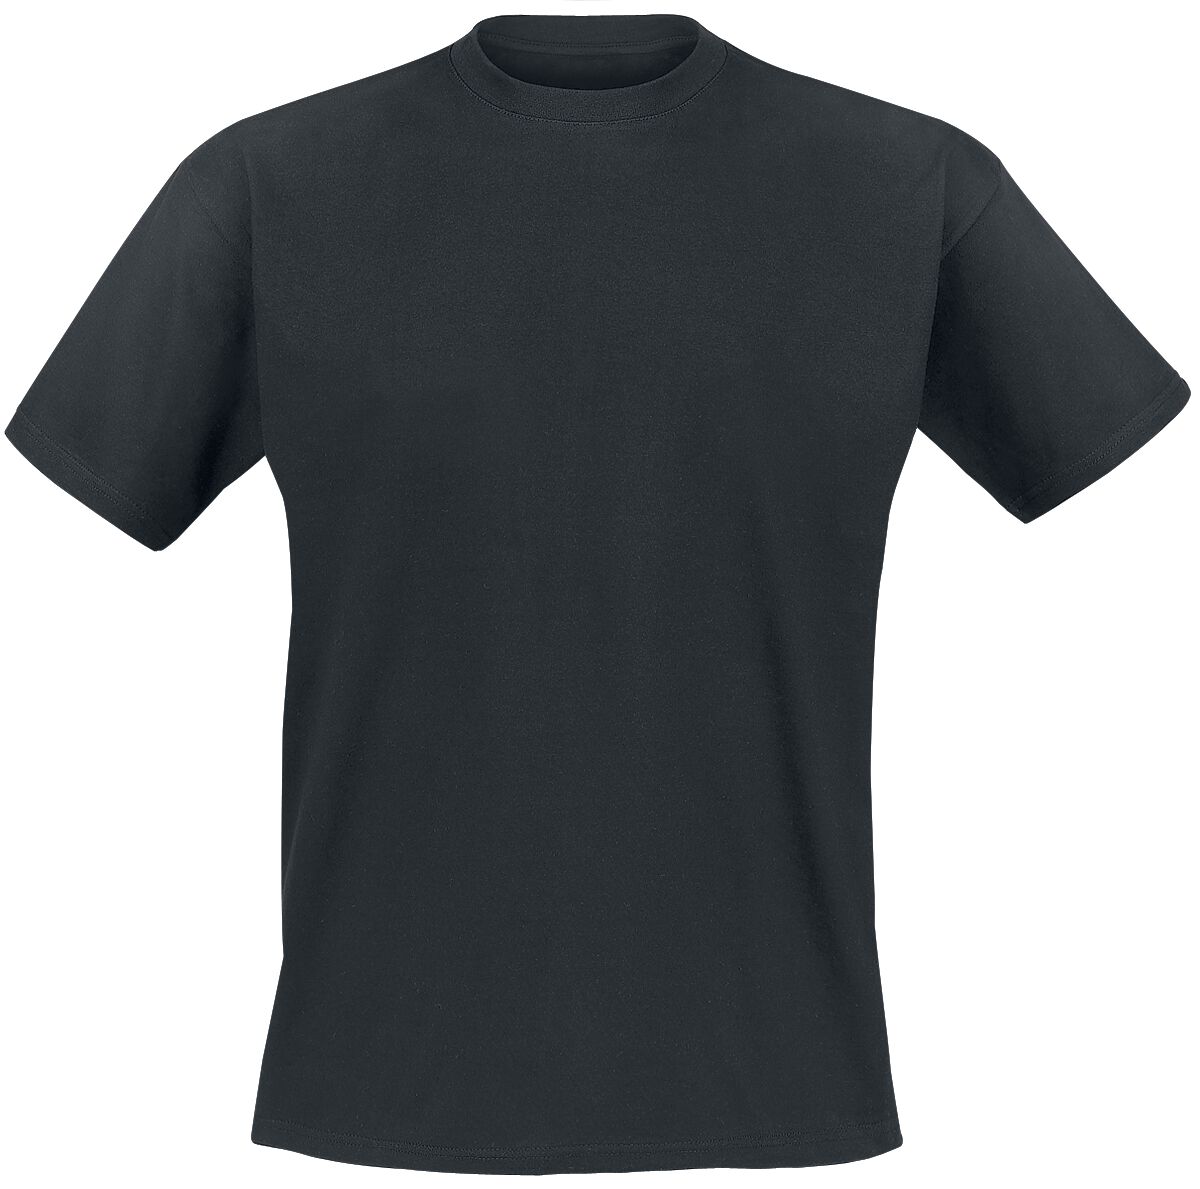 Genesis T-Shirt - Mad Hatter - S bis XXL - für Männer - Größe XL - schwarz  - EMP exklusives Merchandise!